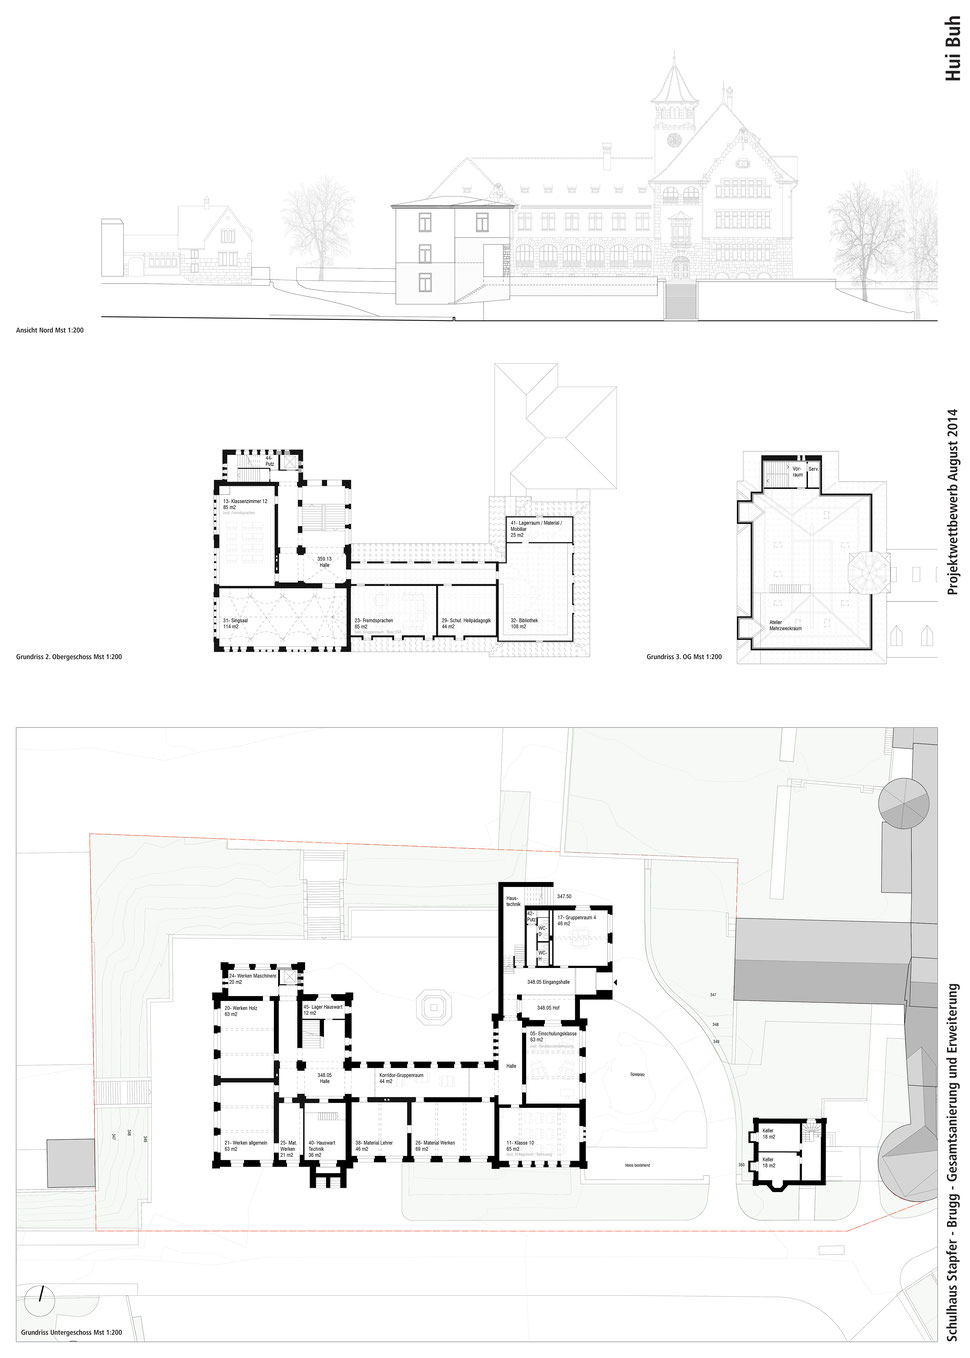 Wettbewerb Gesamtsanierung und Erweiterung Schulhaus Stapfer, Brugg, Hopf & Wirth Architekten Winterthur, www.hopfwirth.ch